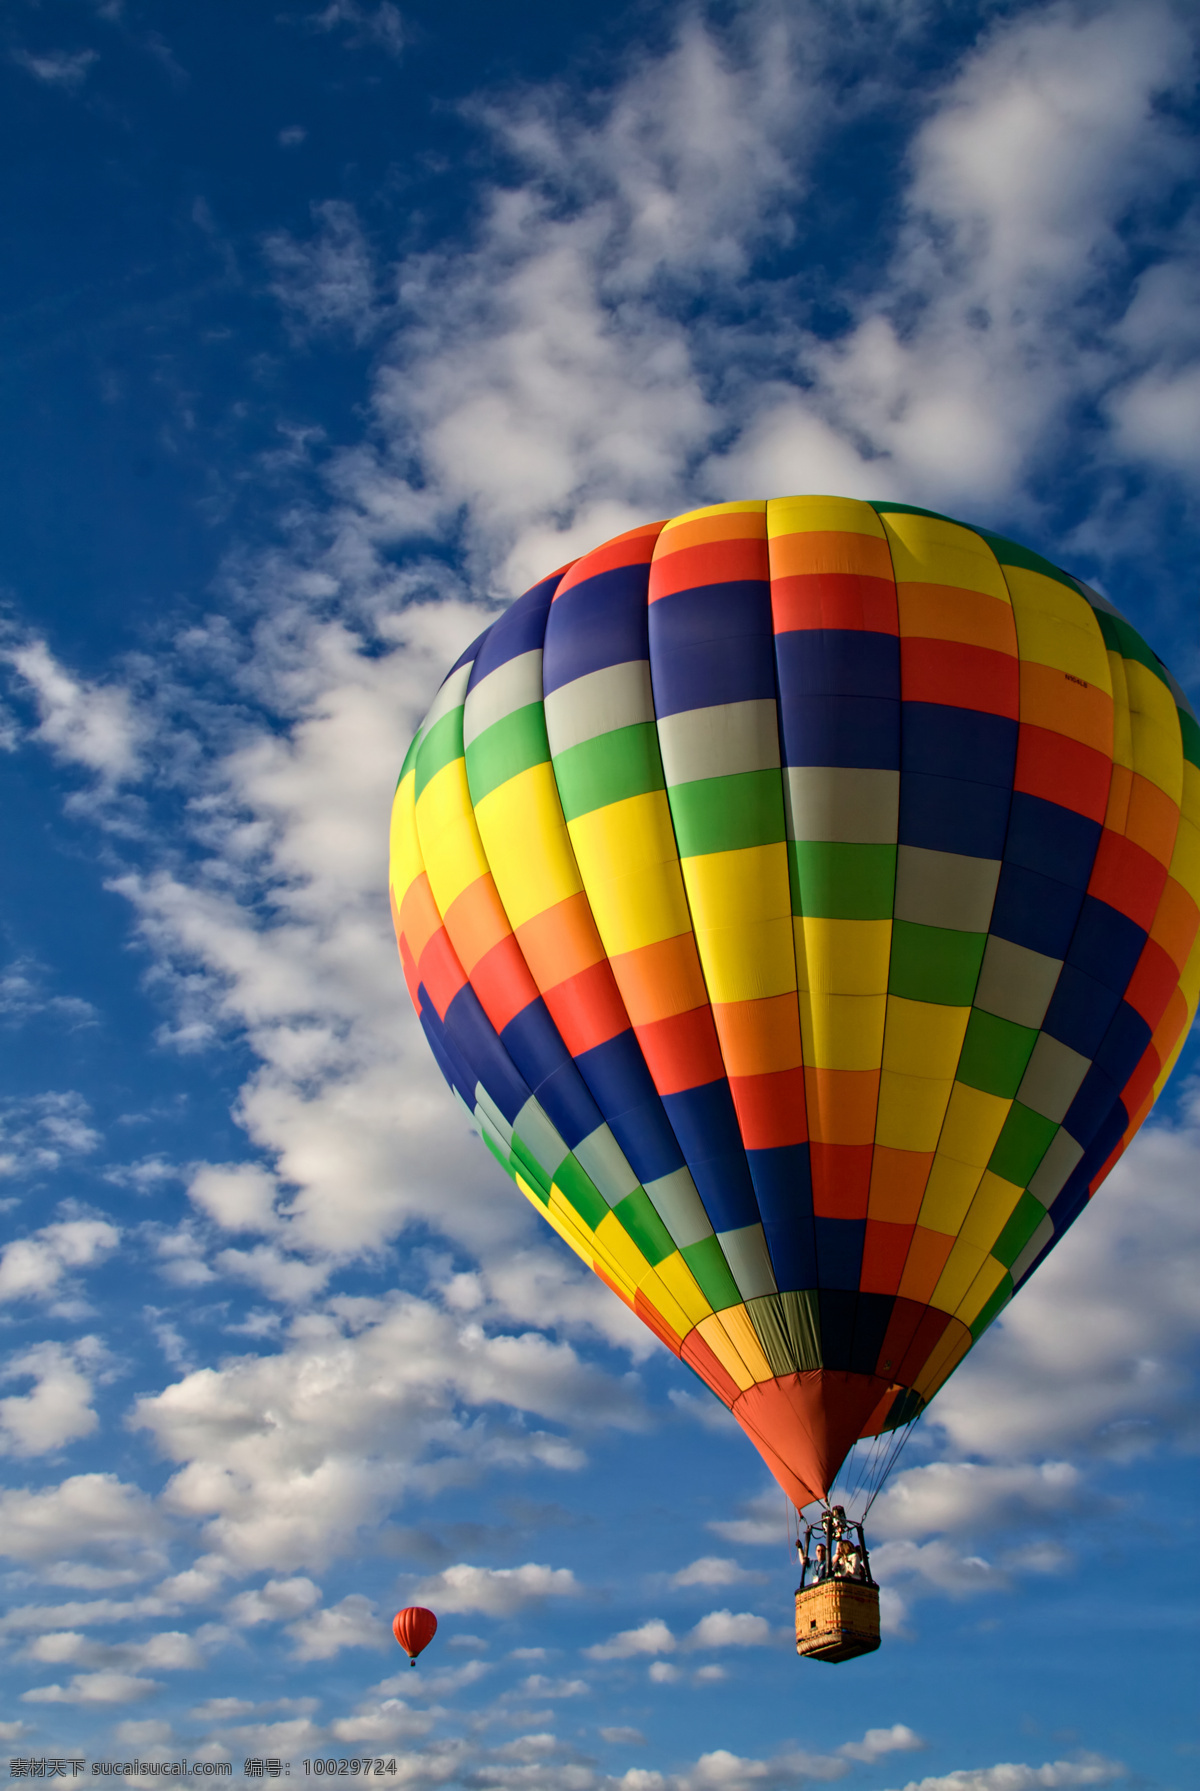 天空 中 热气球 蓝天白云 炫彩 彩色热气球 汽车图片 现代科技